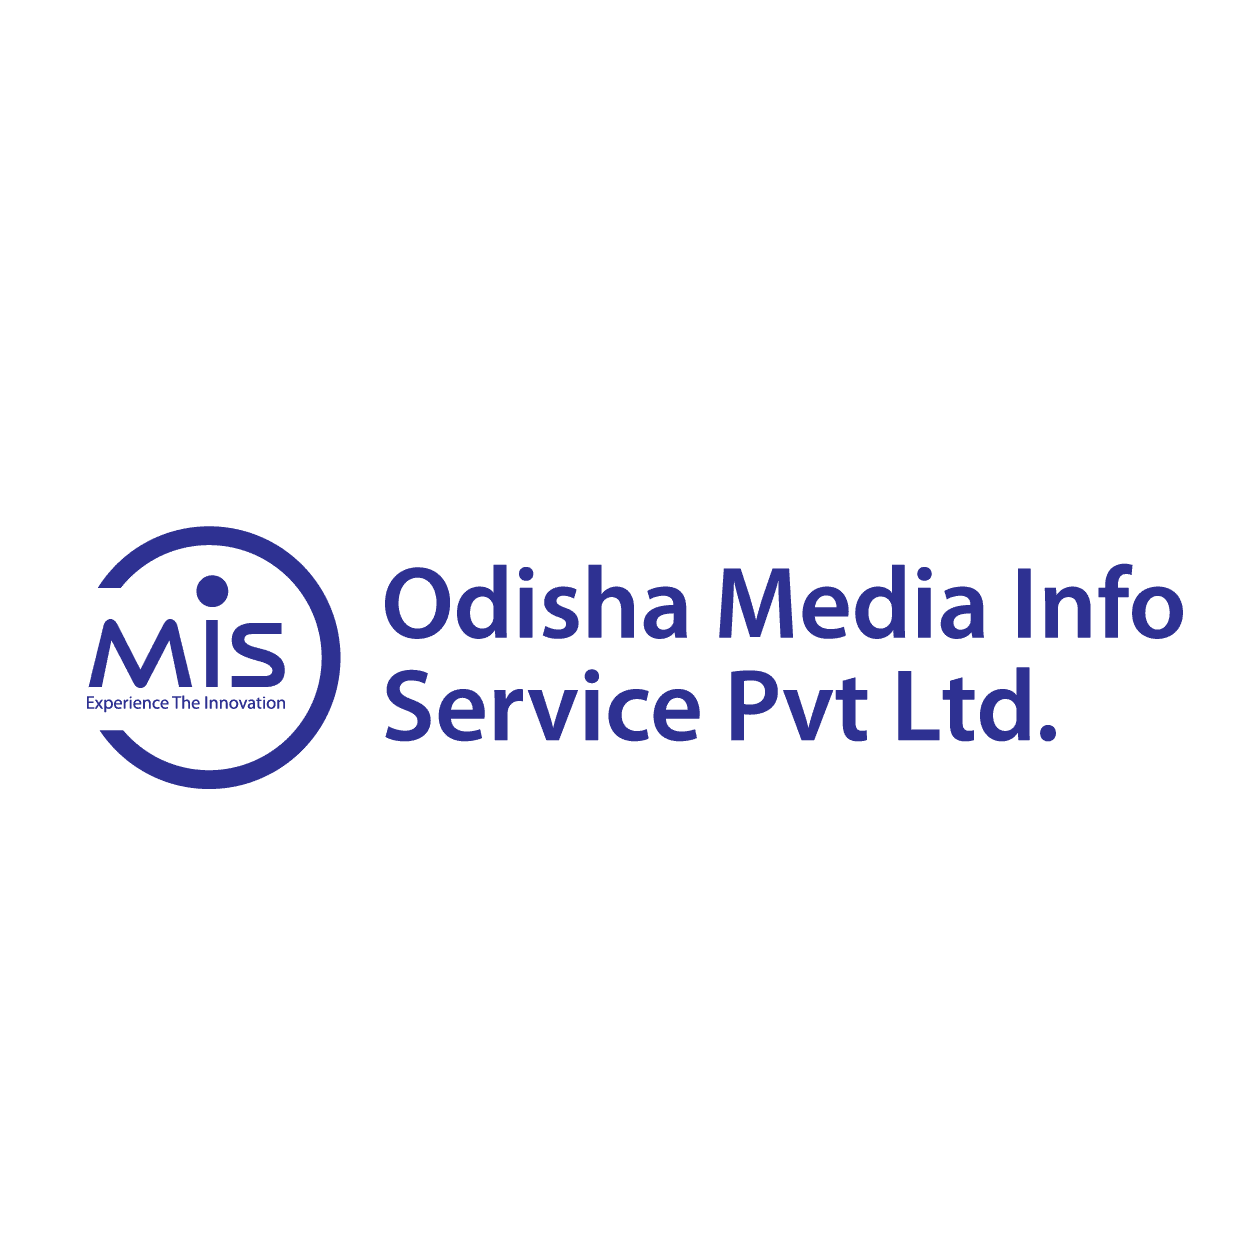 Odisha Media Info Service